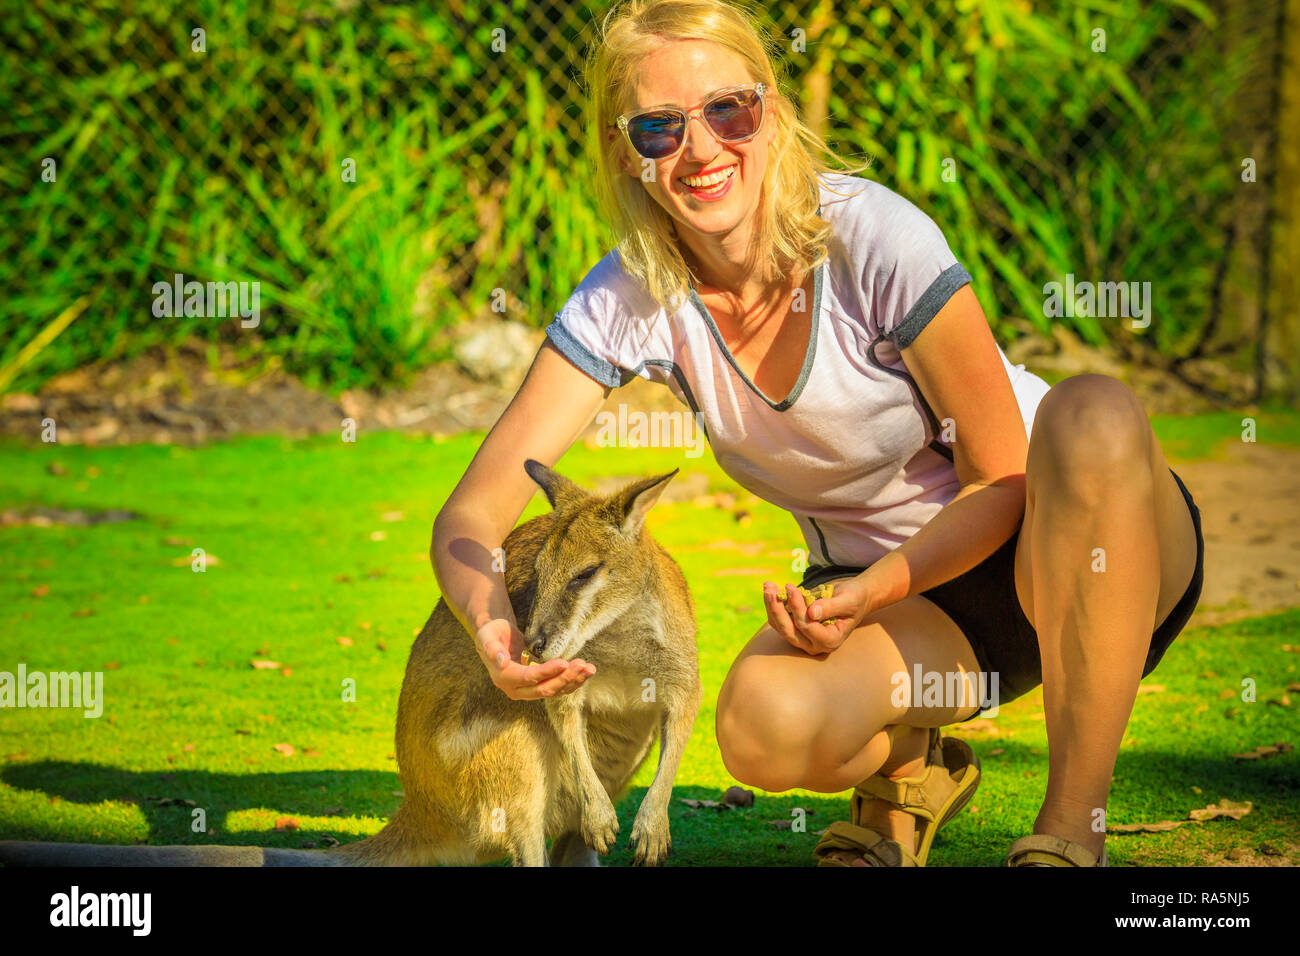 Happy blonde woman eating kangaroo dans la nature. Femme touriste jouit  d'icône des animaux Australiens du pays. Whiteman, près de Perth en  Australie occidentale. Journée ensoleillée Photo Stock - Alamy